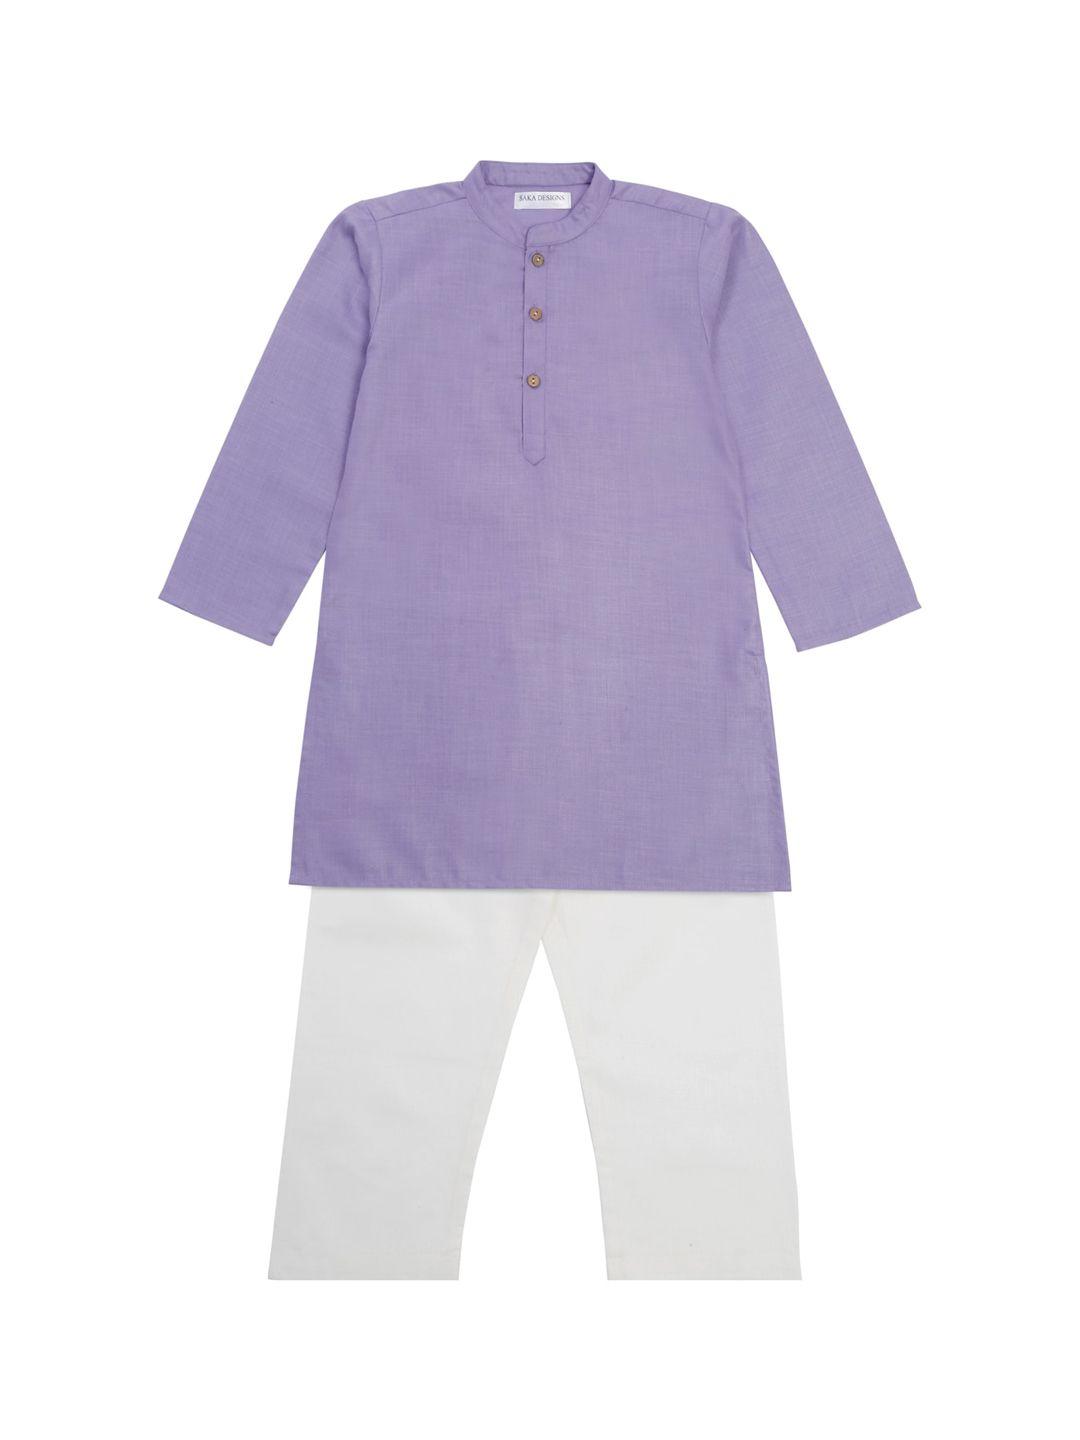 saka-designs-boys-mandarin-collar-straight-kurta-with-pyjamas